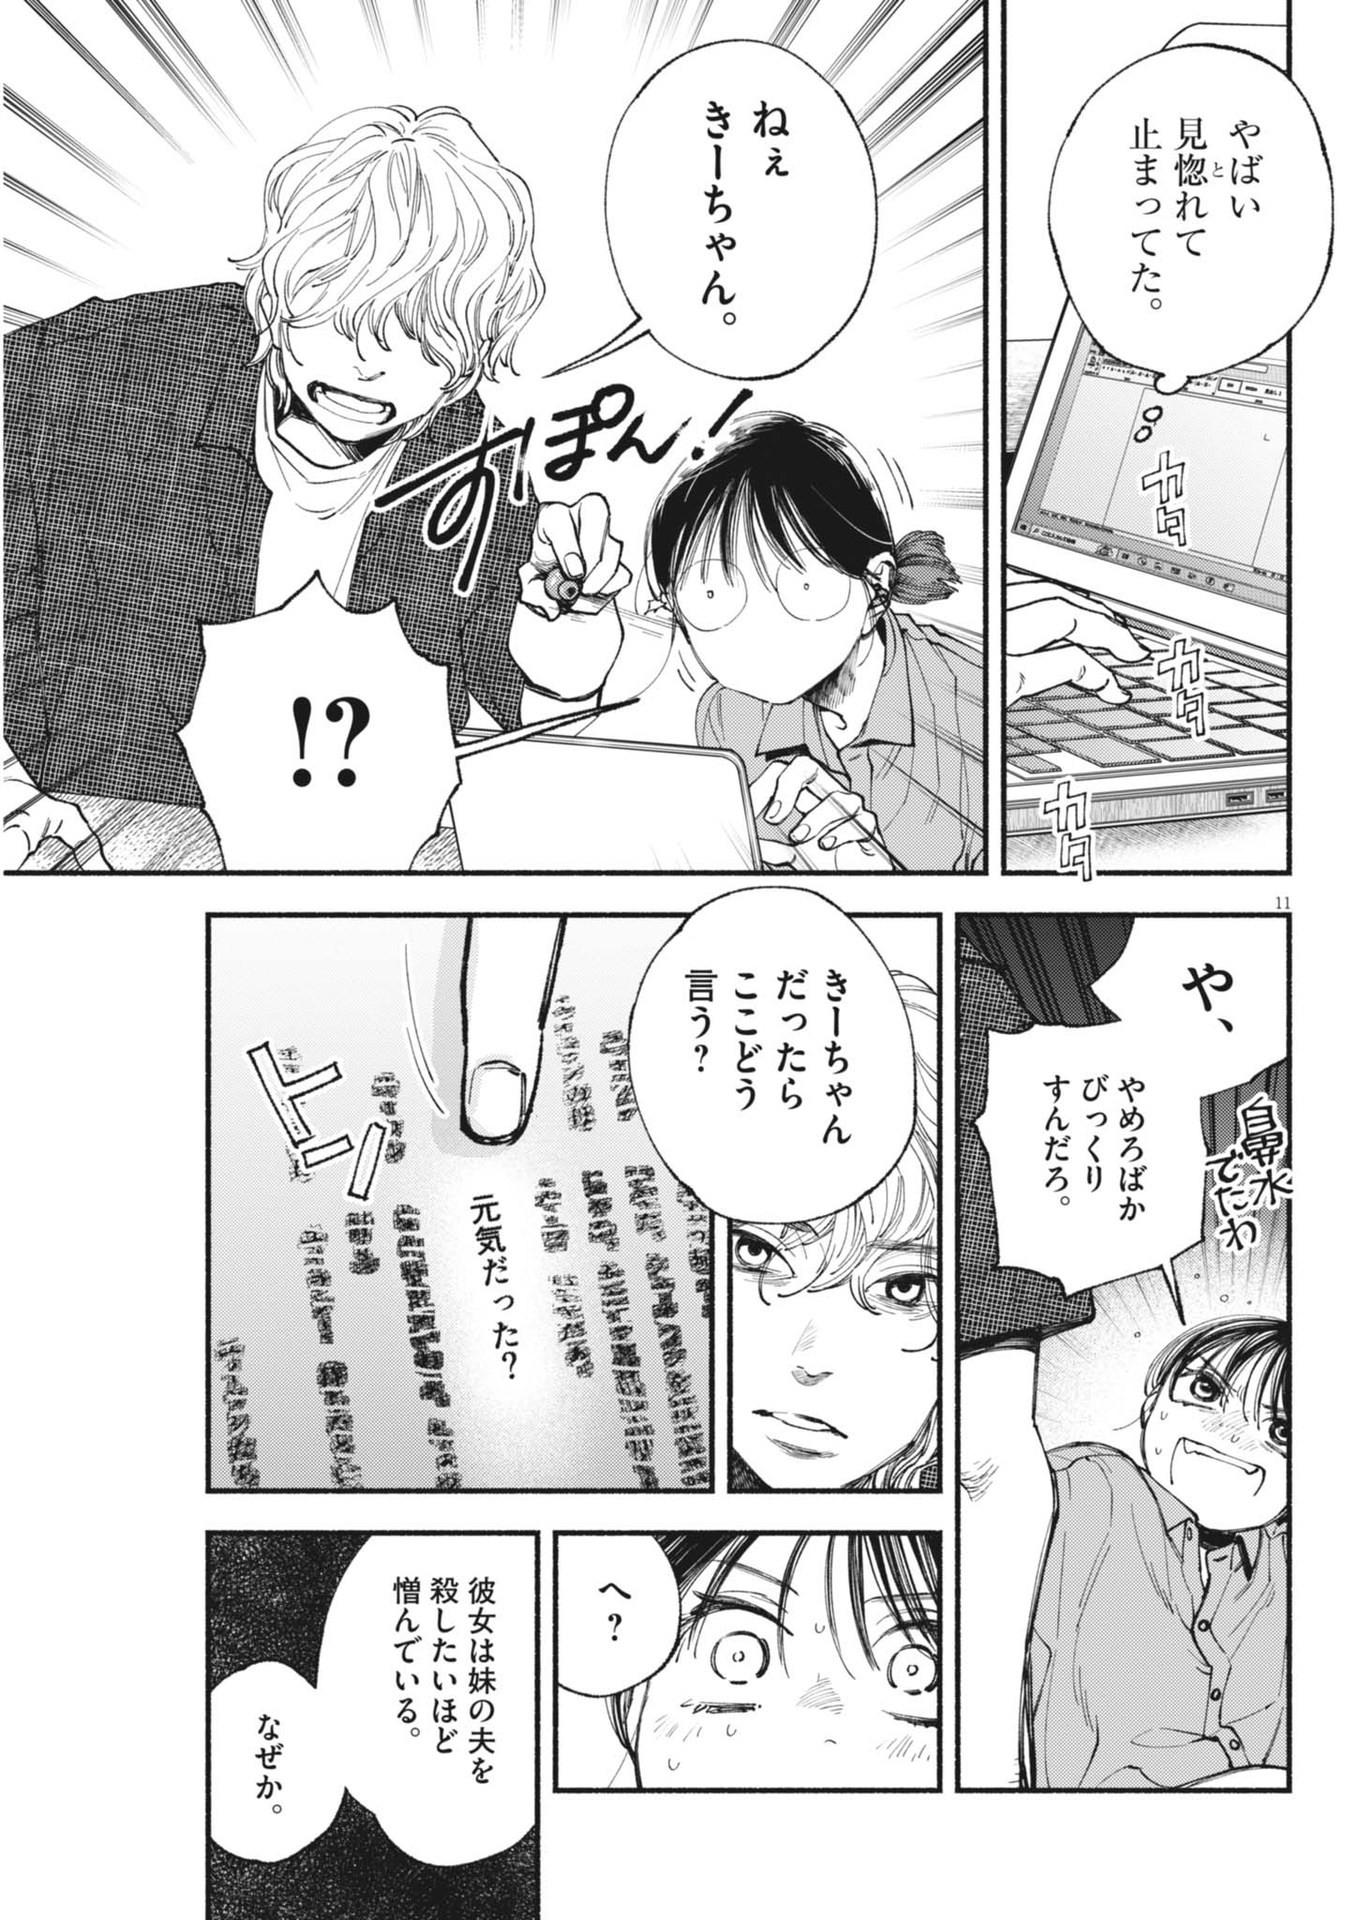 Konoyo wa Tatakau Kachi ga Aru  - Chapter 28 - Page 11